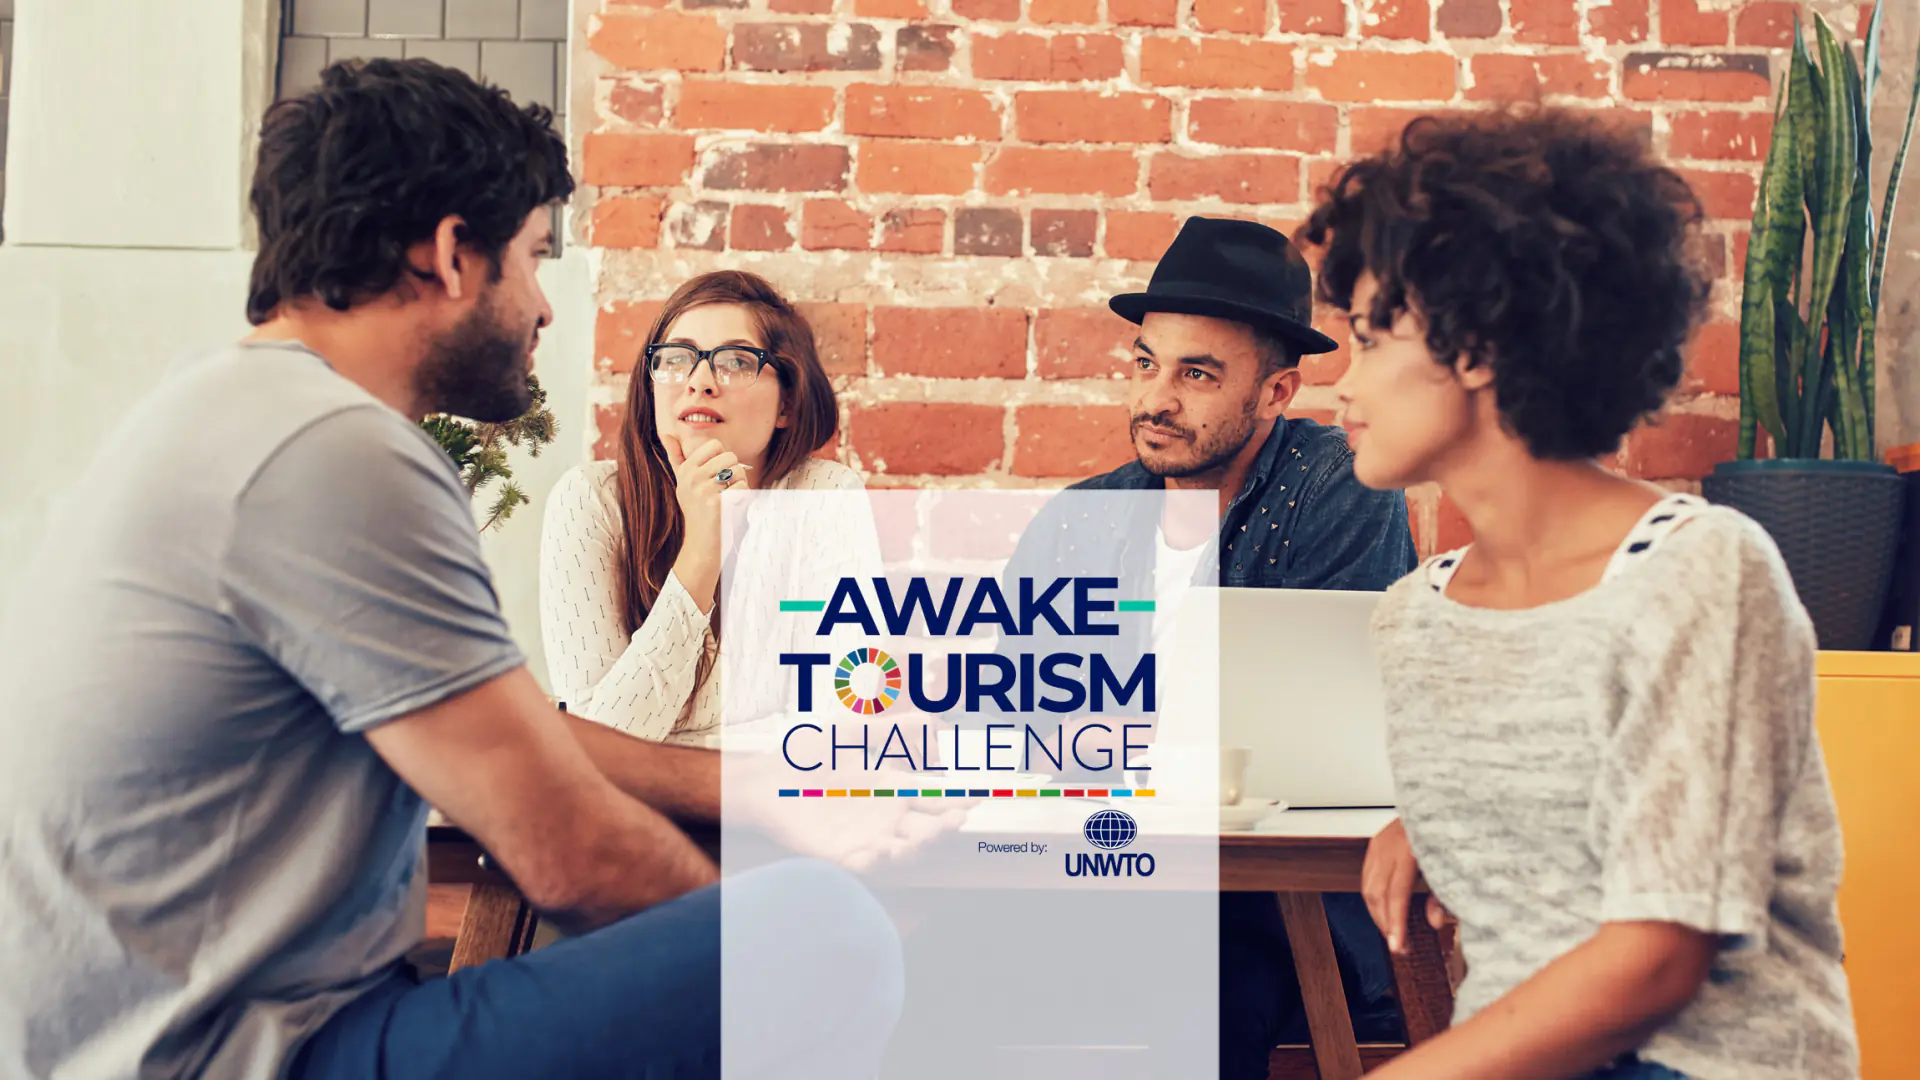 Texnologiya, ijtimoiy taʼsir va barqarorlikka oid boʻlgan innovatsion startap loyihalari uchun UNWTO Awake Tourism Challenge tanlovi